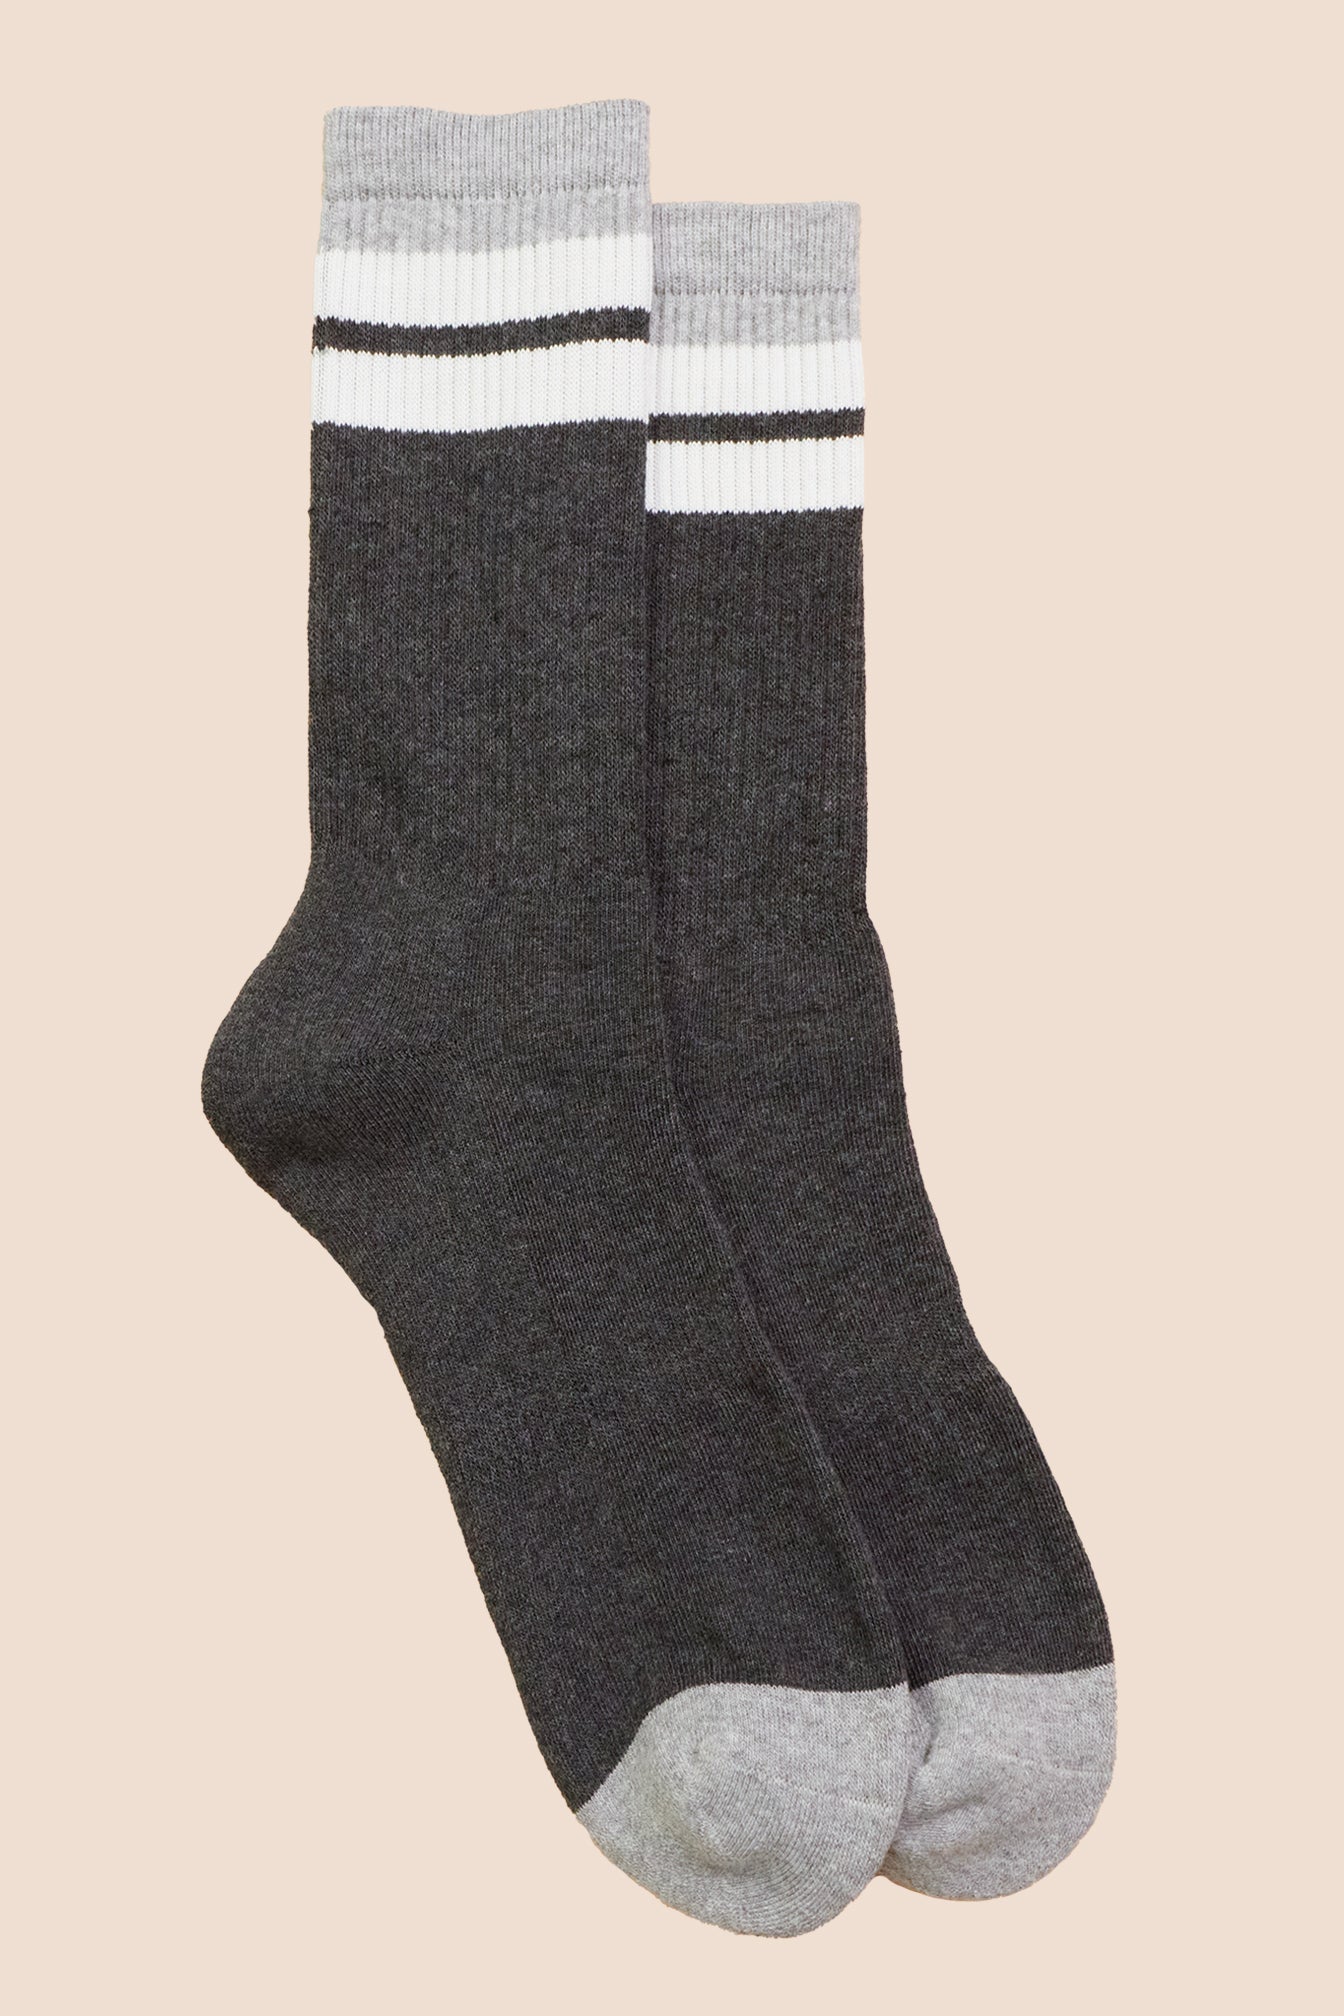 Petrone-chaussettes-tennis-coton-bio-retro-hautes-homme-gris anthracite-gris clair-posees